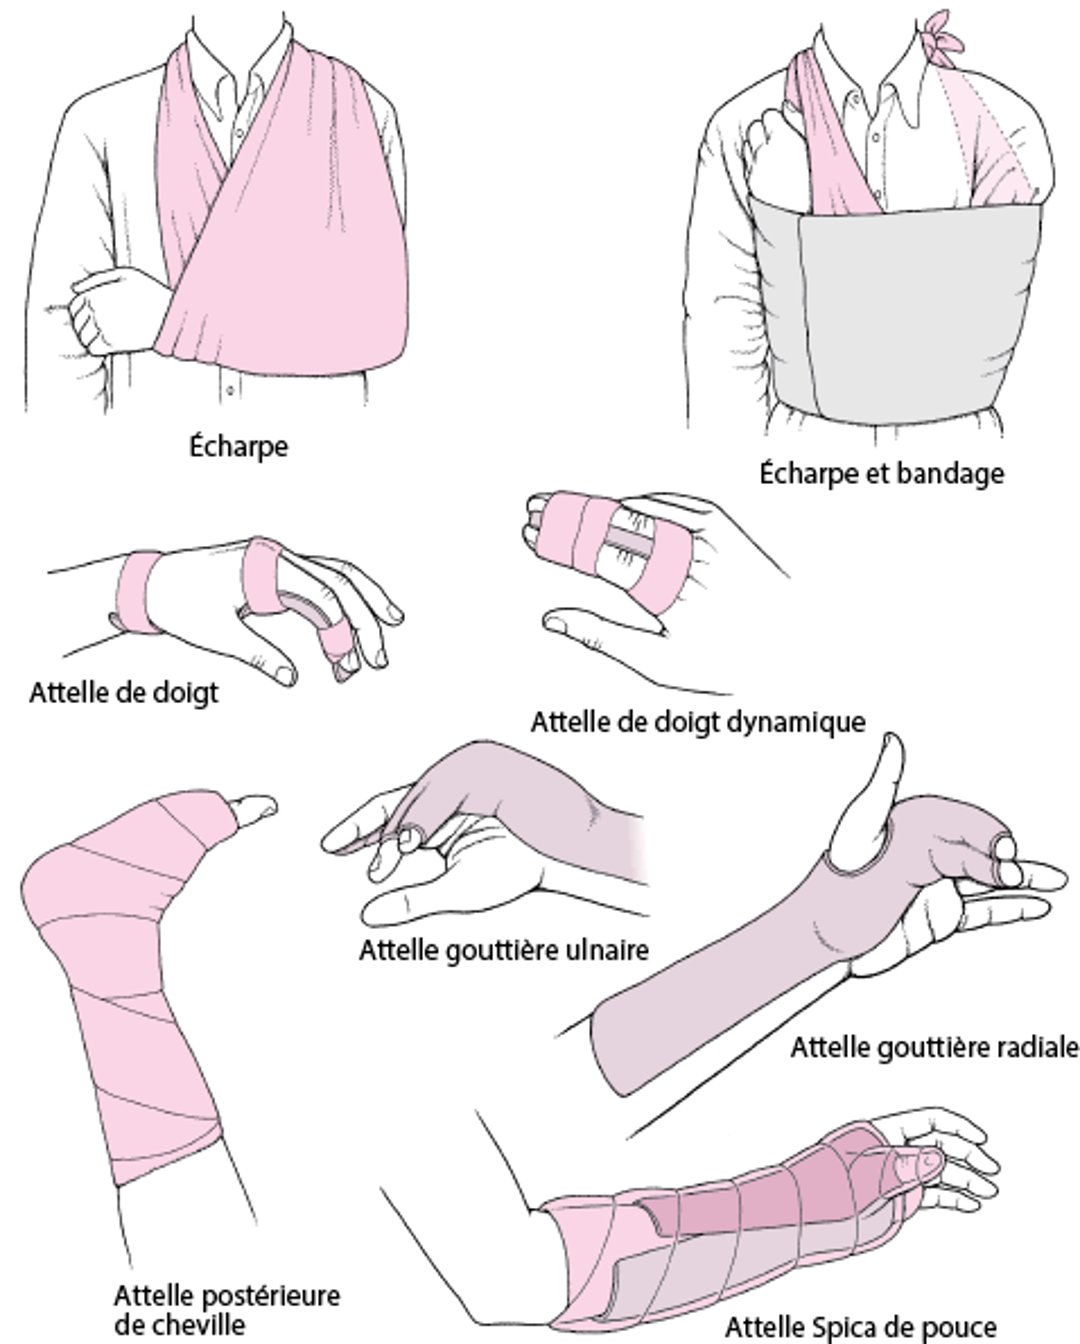 Techniques fréquemment utilisées pour l’immobilisation d’une articulation